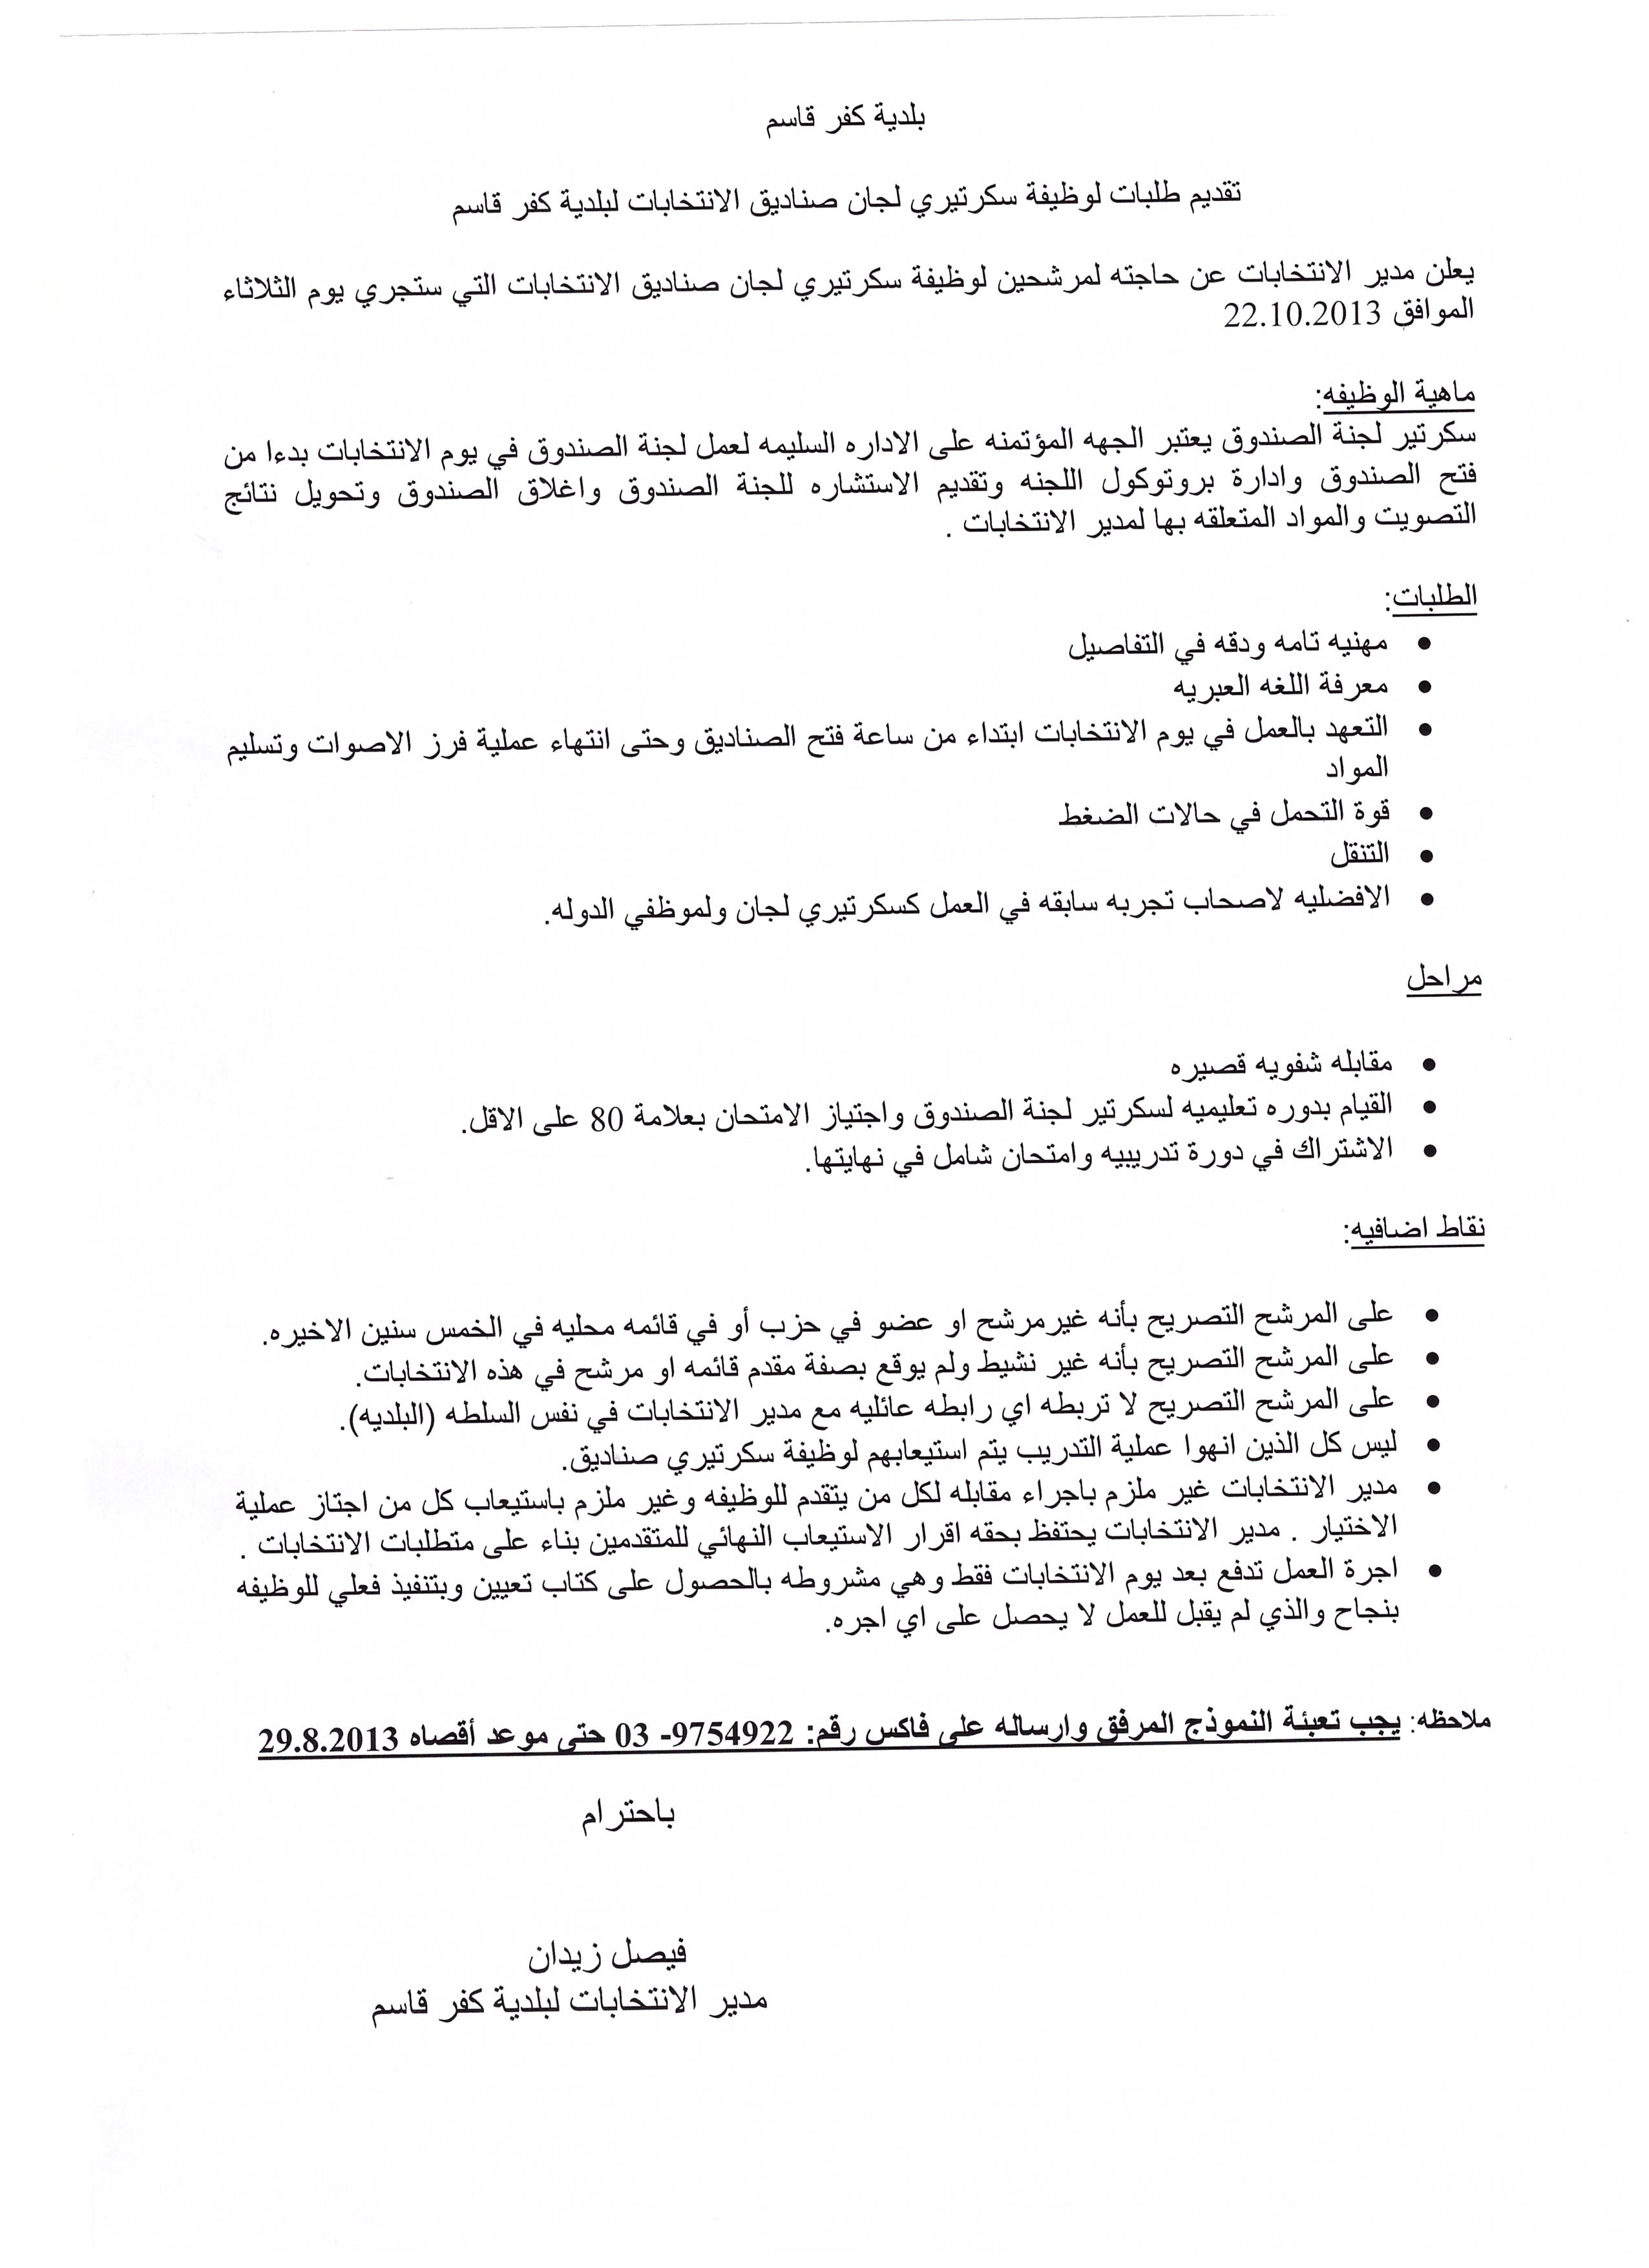 هام جدا: تقديم طلبات لوظيفة سكرتيري لجان صناديق الانتخابات لبلدية كفر قاسم